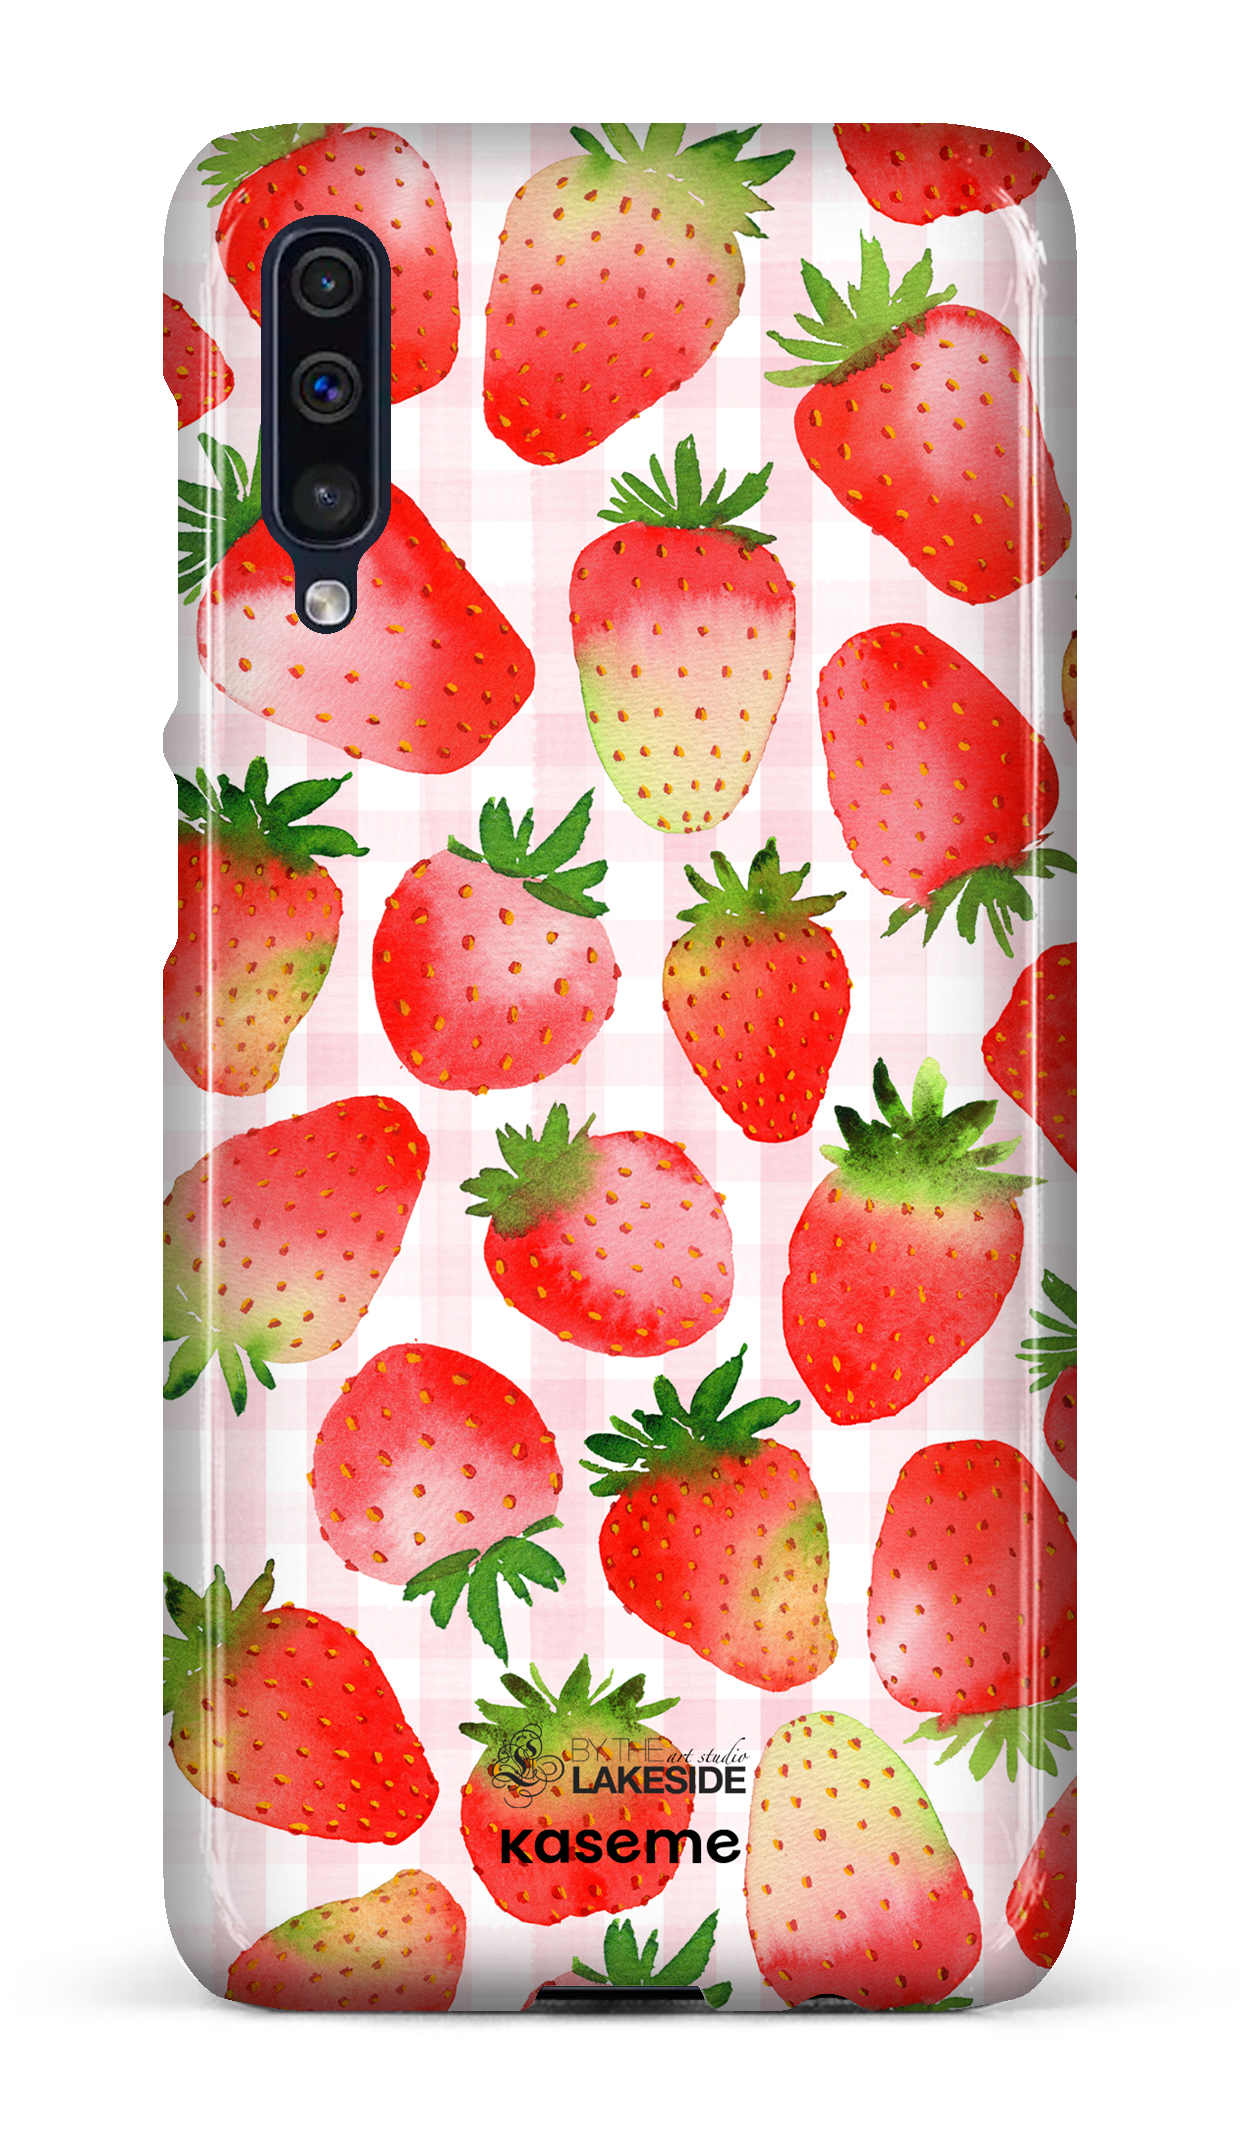 Strawberry Fields by Pooja Umrani - Galaxy A50